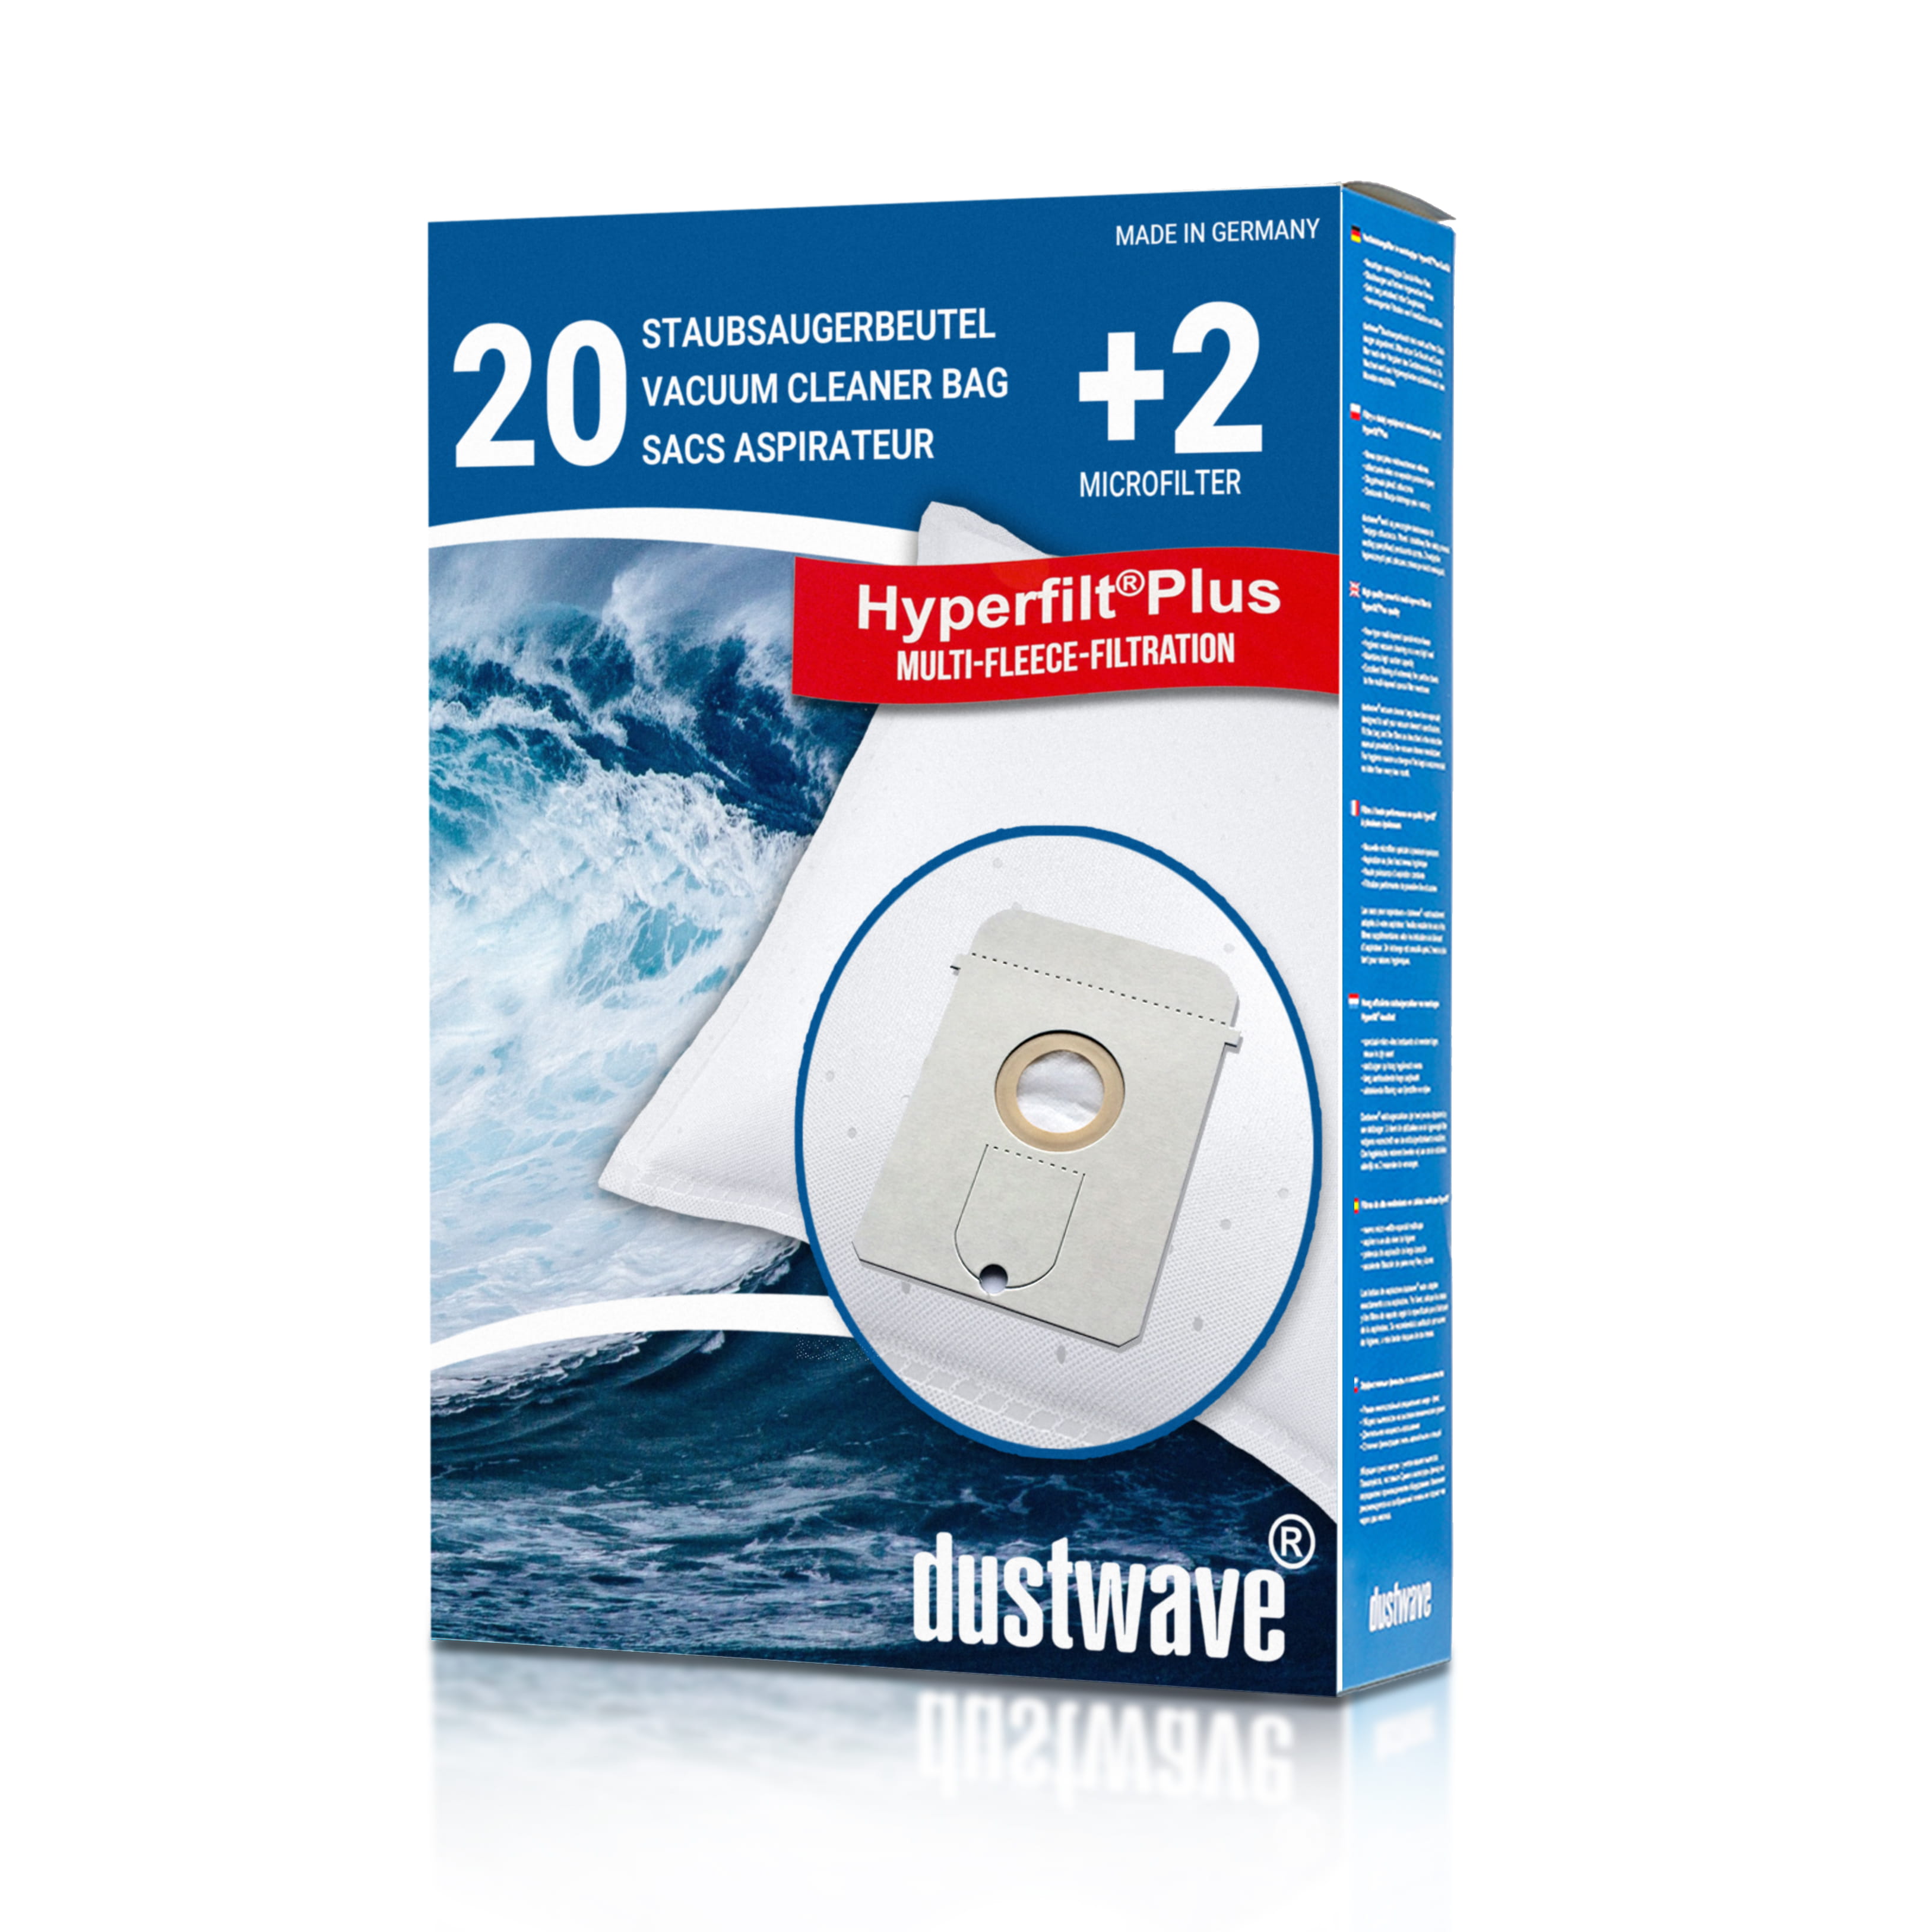 Dustwave® 20 Staubsaugerbeutel für AEG Vampyr 8600 - hocheffizient, mehrlagiges Mikrovlies mit Hygieneverschluss - Made in Germany